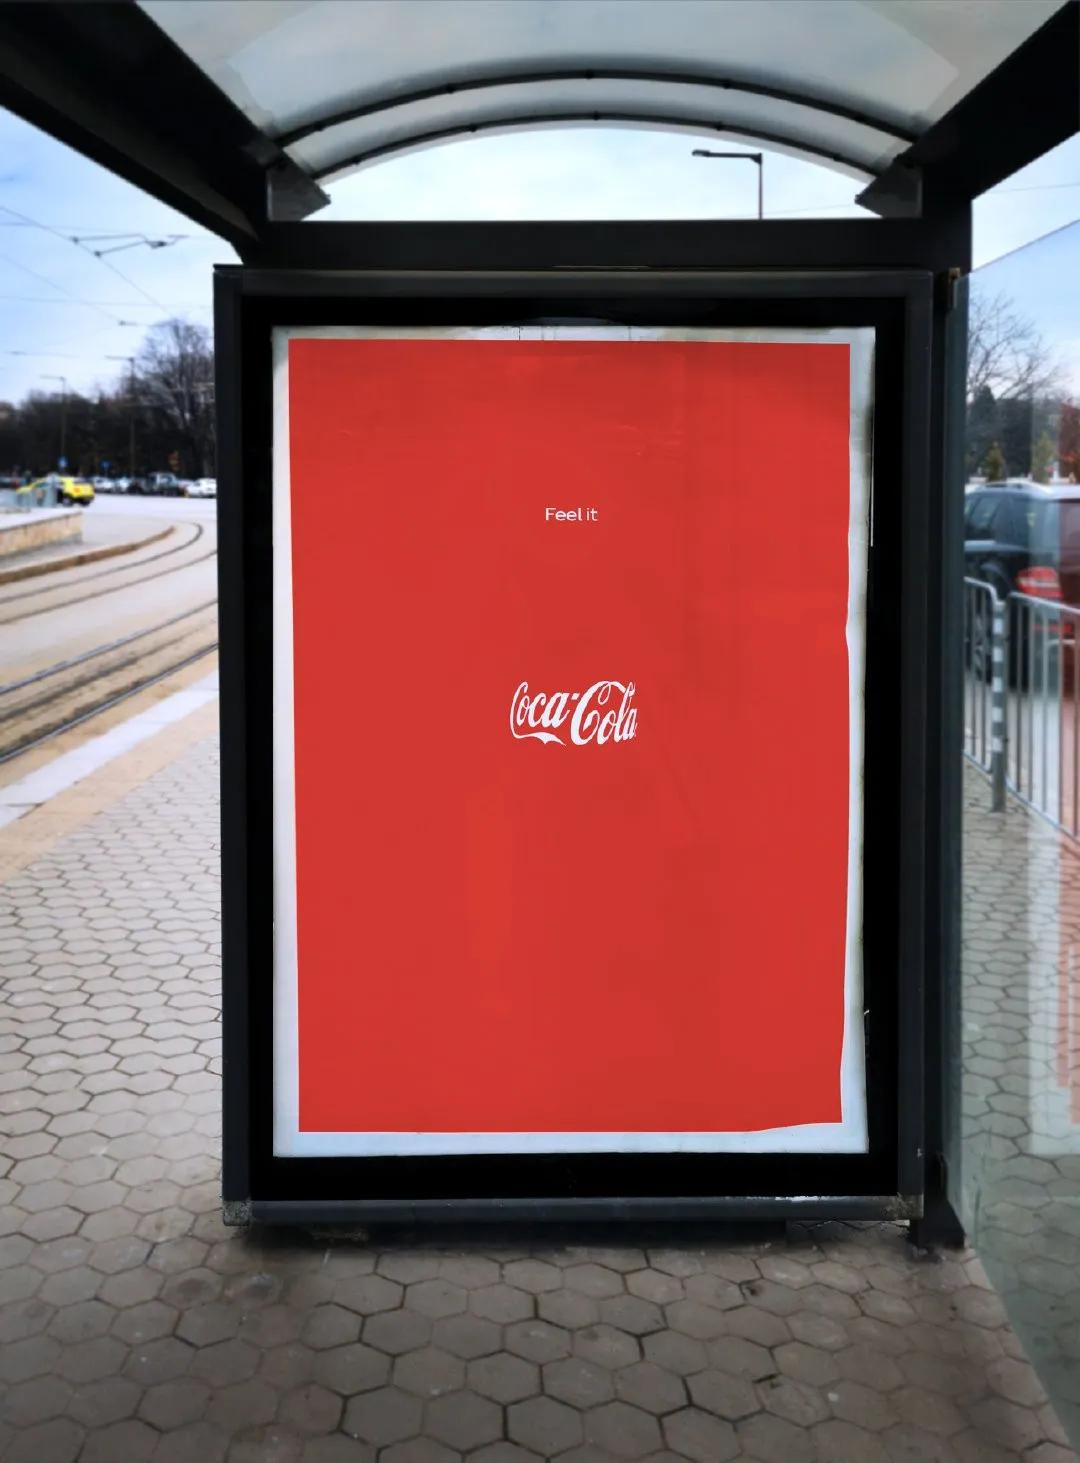 近日,可口可乐在欧洲市场发布了一组户外广告,海报上面只有一句文案